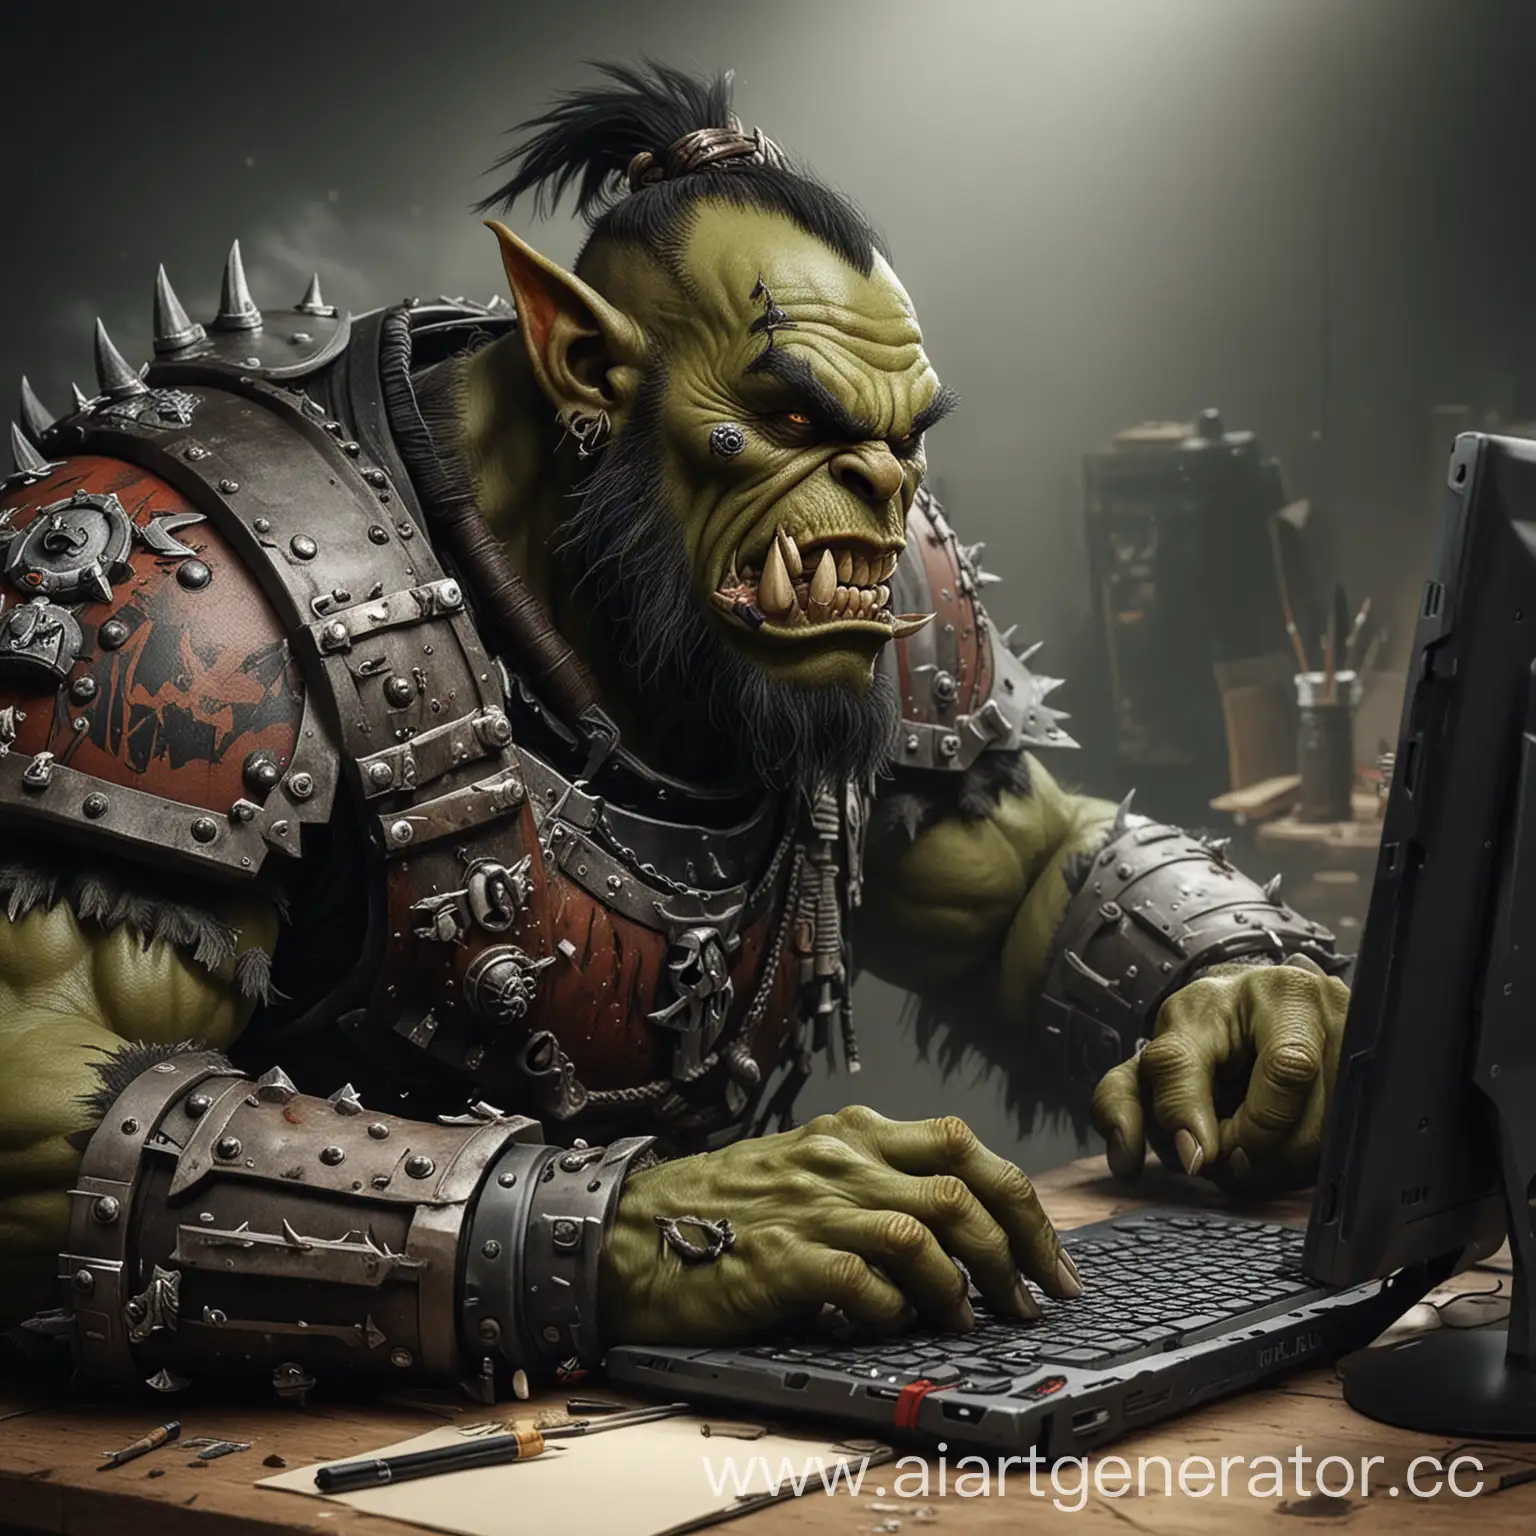 орк-художник из Warhammer 40kрисует на графическом планшете за компьютером